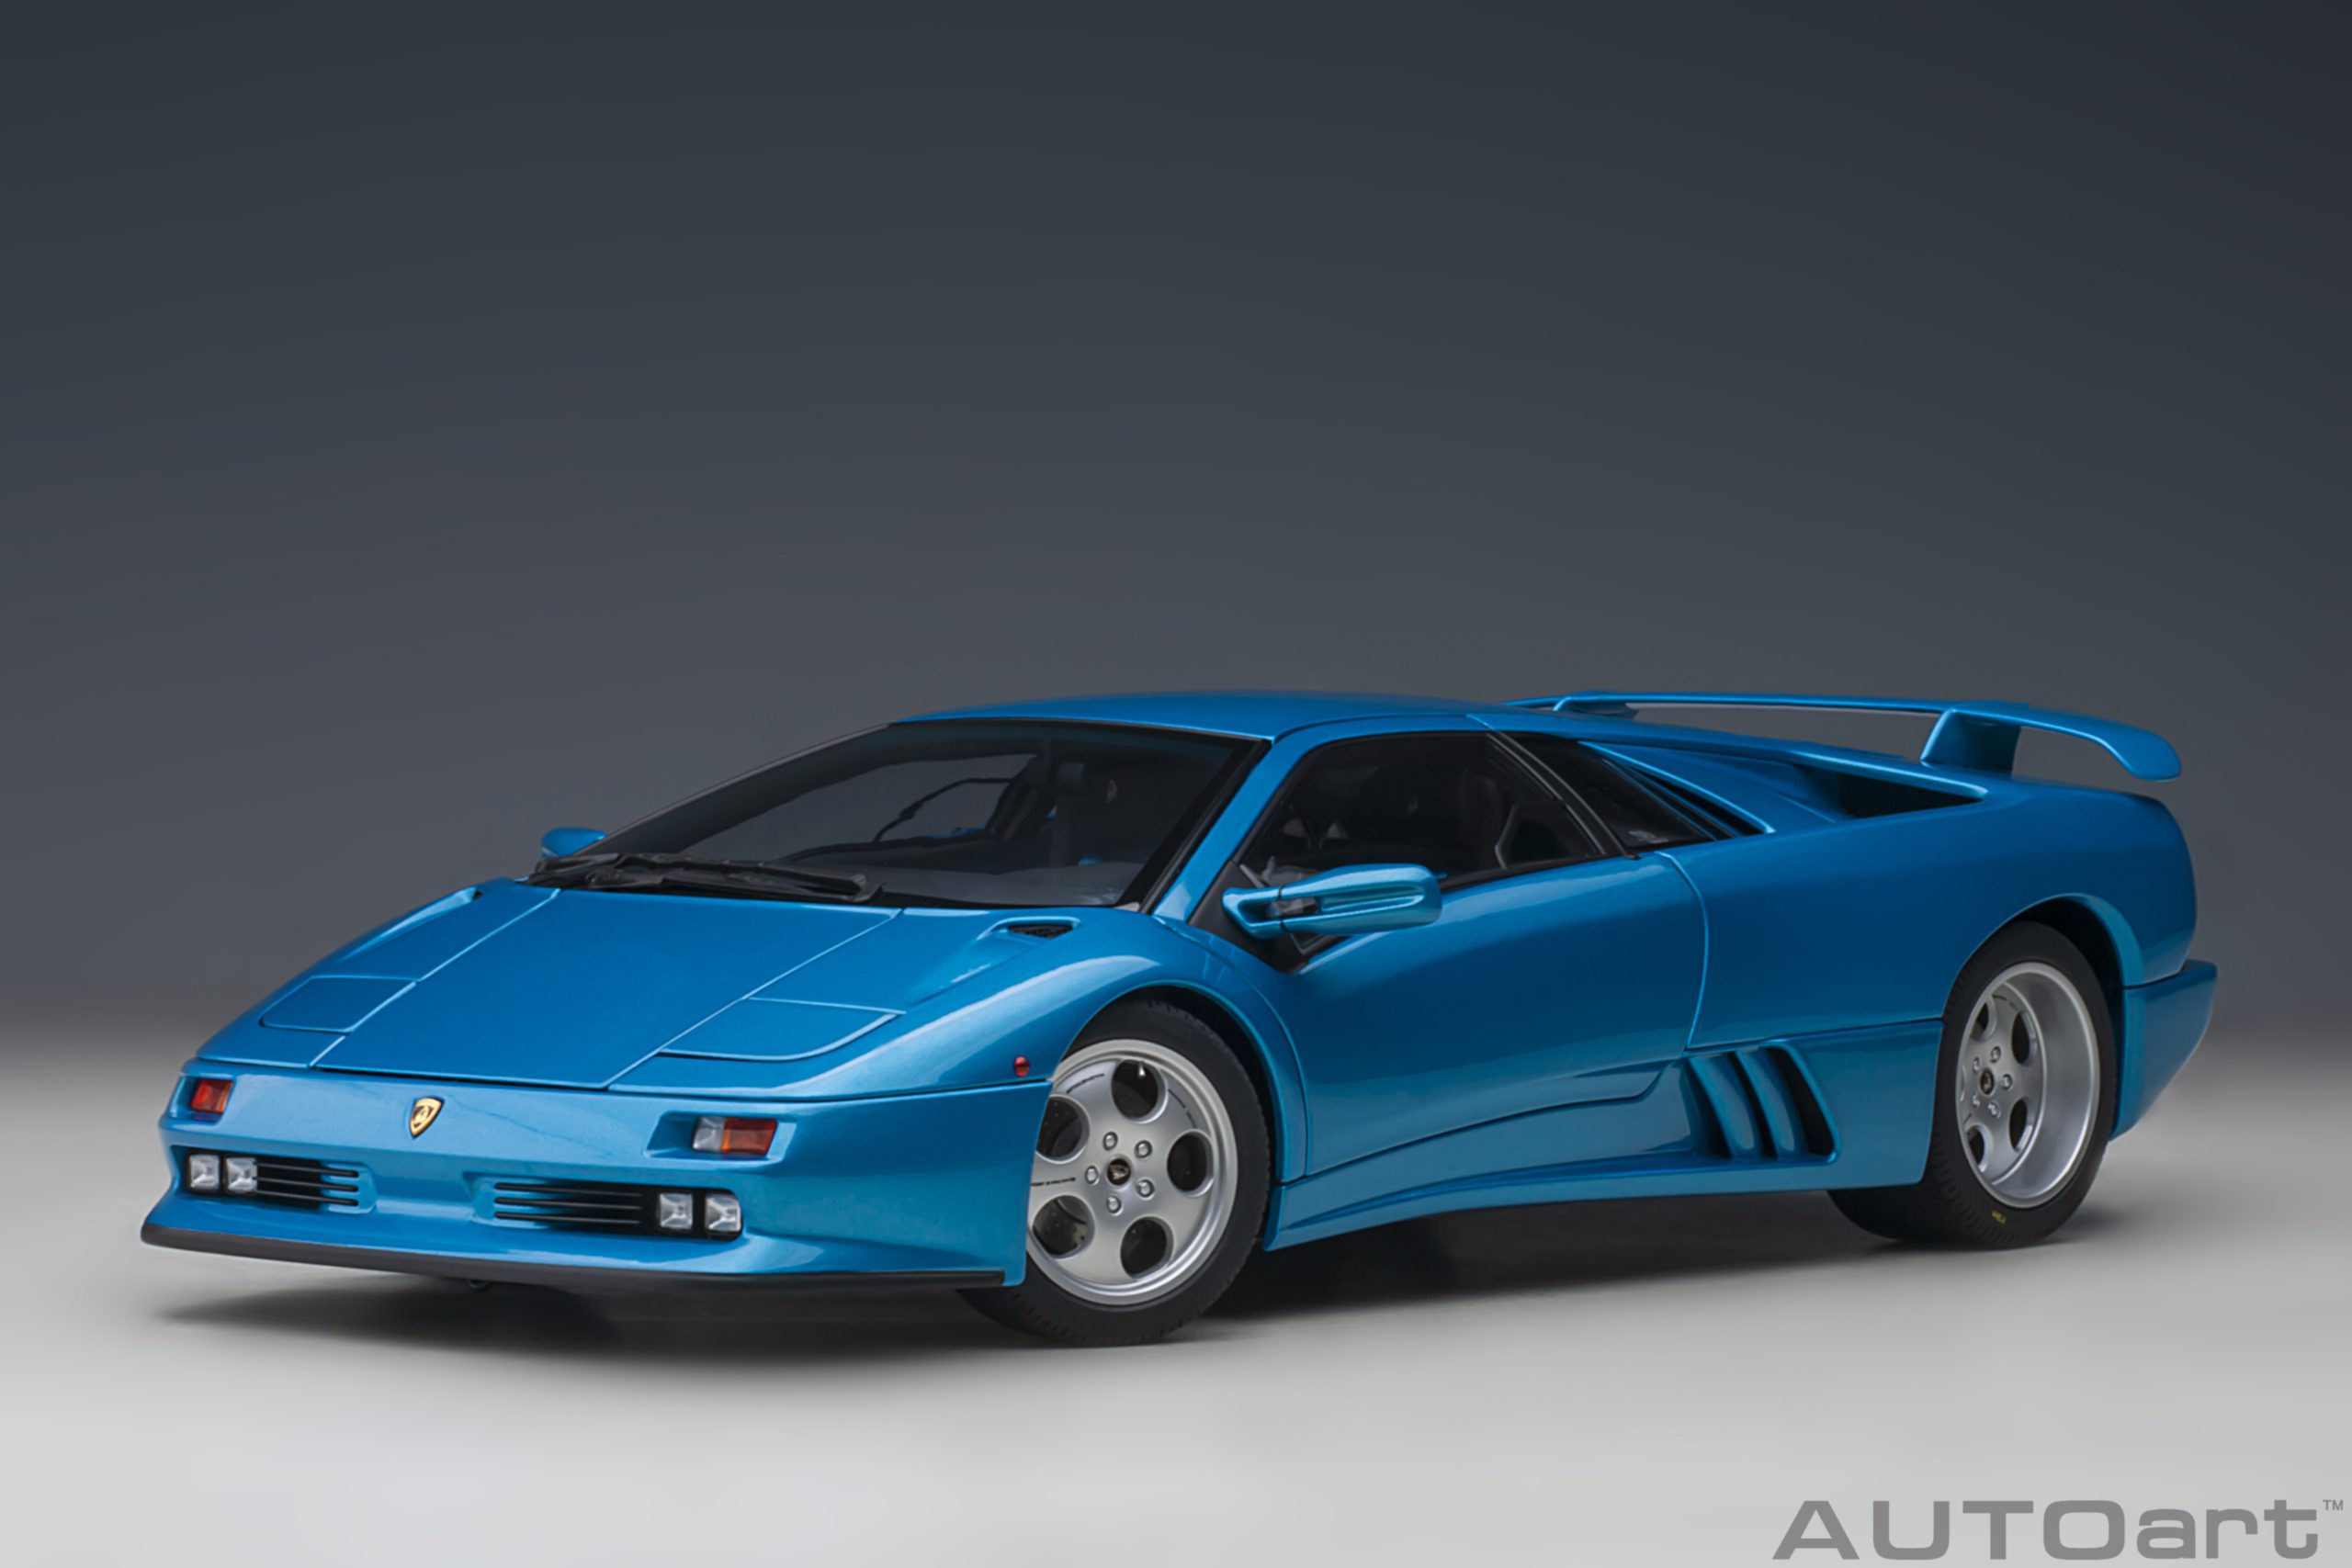 autoart-79156-1-Lamborghini-Diablo-SE30-30th-Anniversary-Edition-Blu-Sirena-metallic-blue